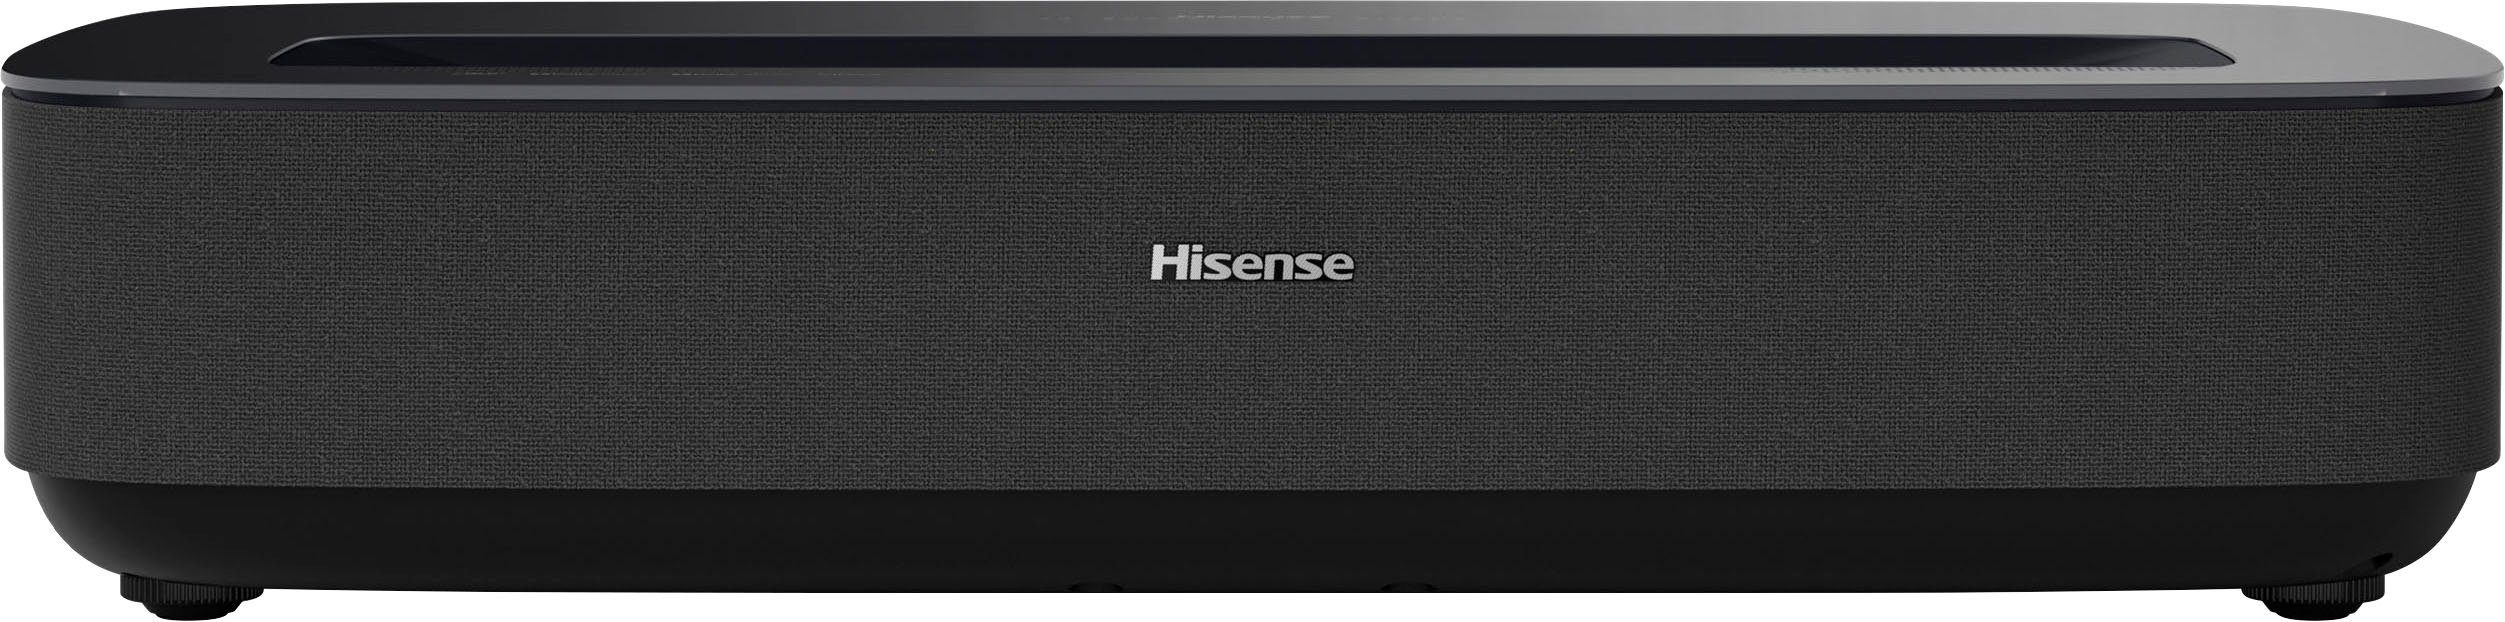 Hisense PL1SE Beamer 2160 (2100 px) 3840 lm, x